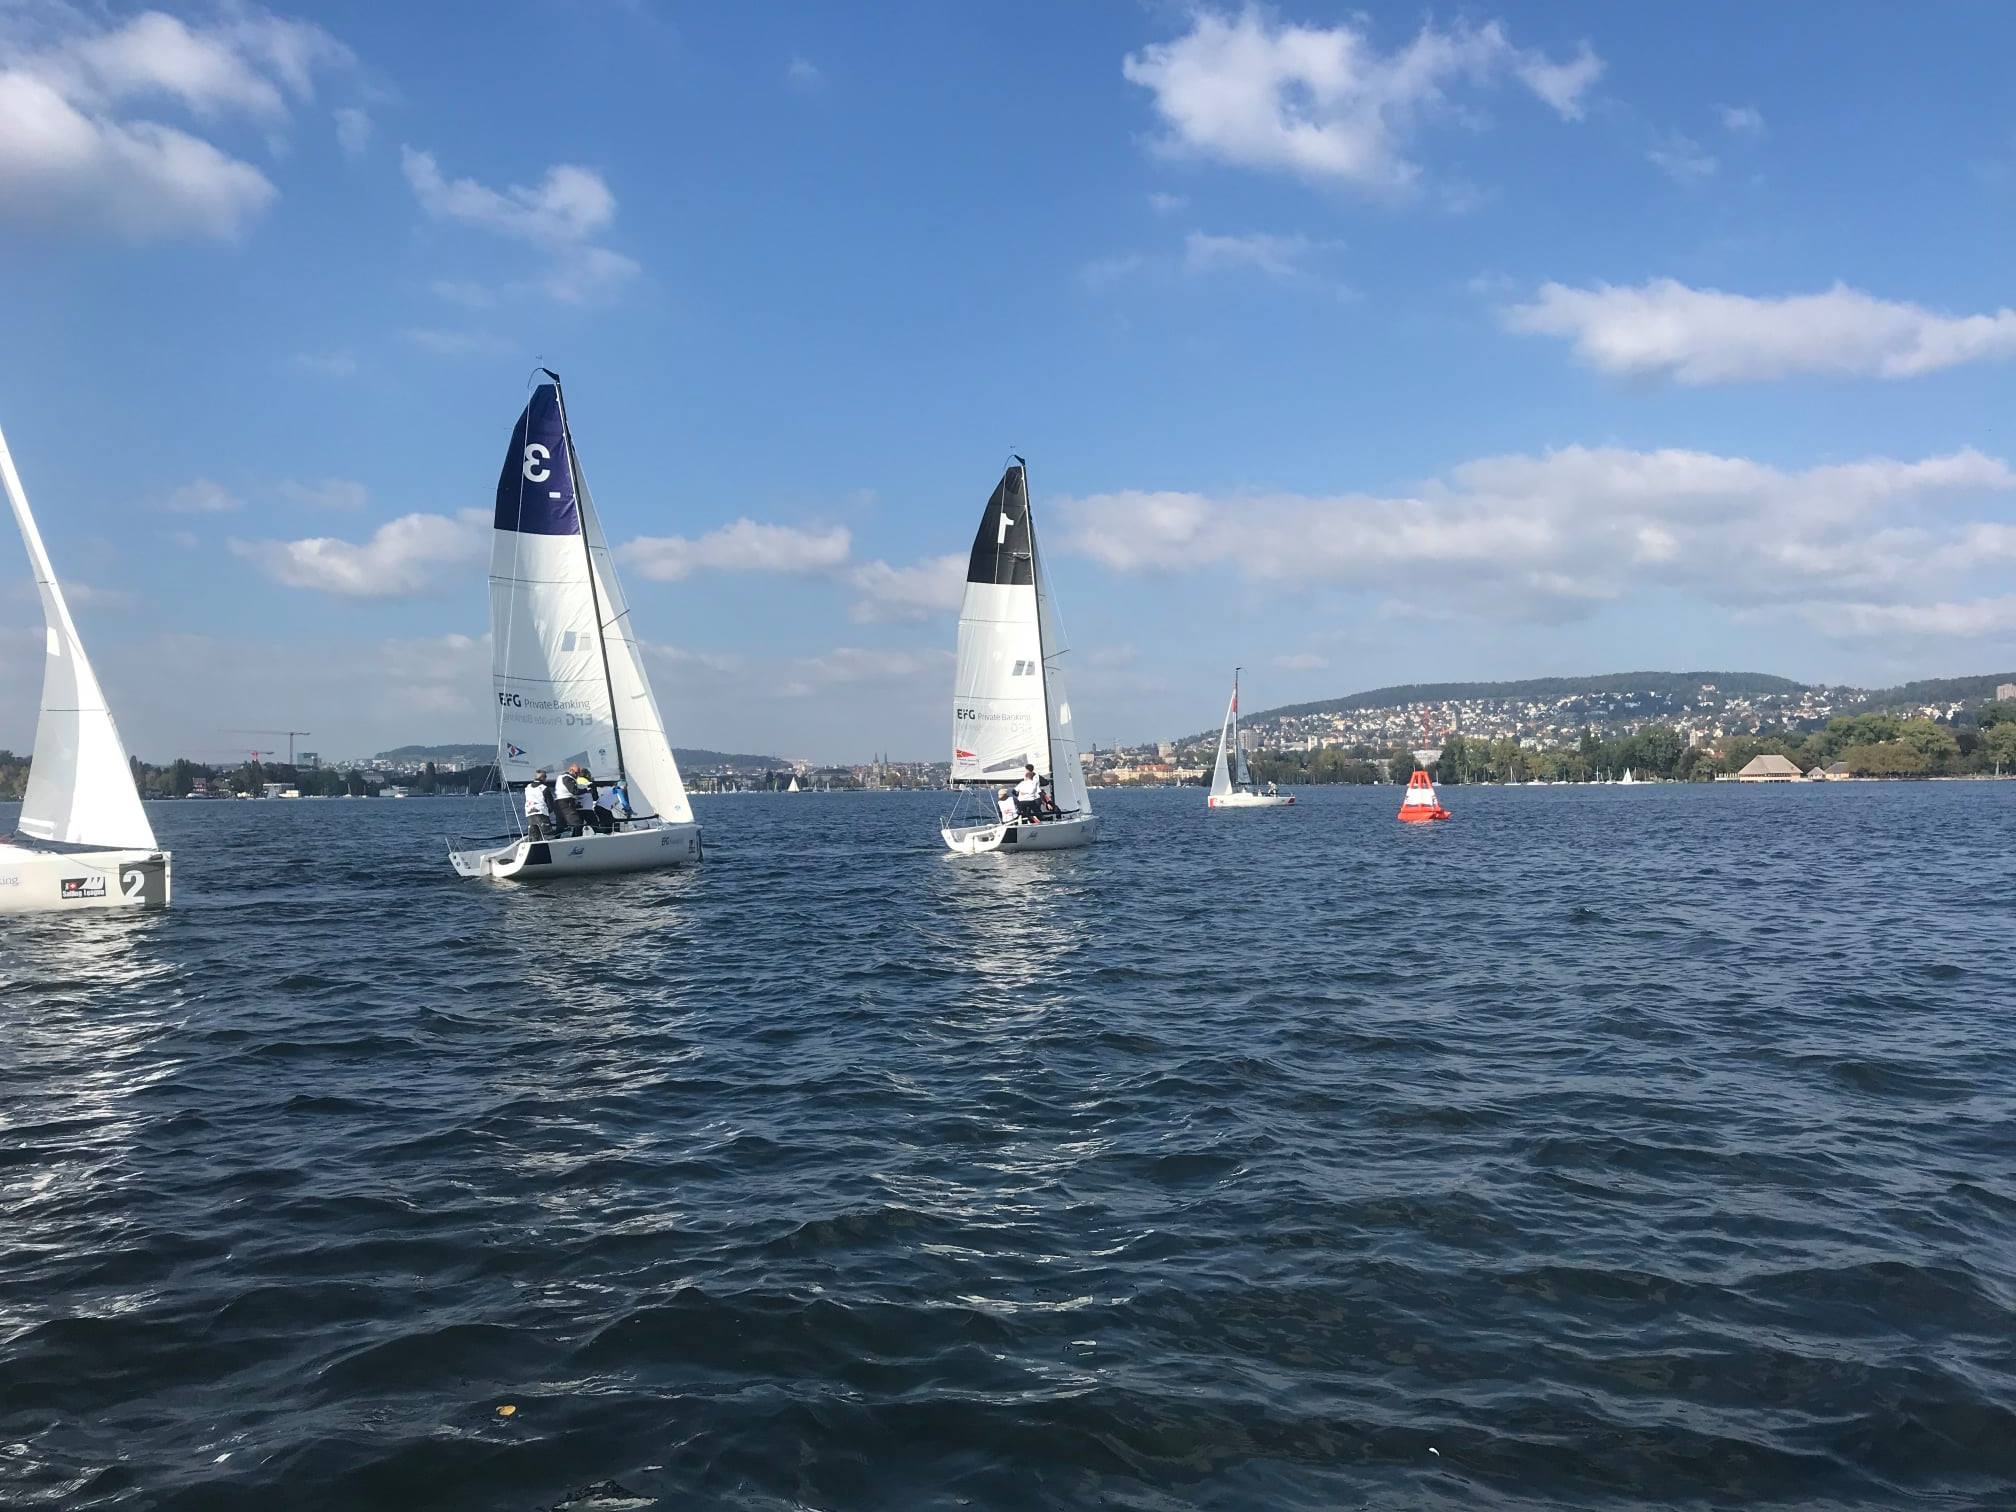  J/70  Swiss Sailing League  Cup  Zuercher SC